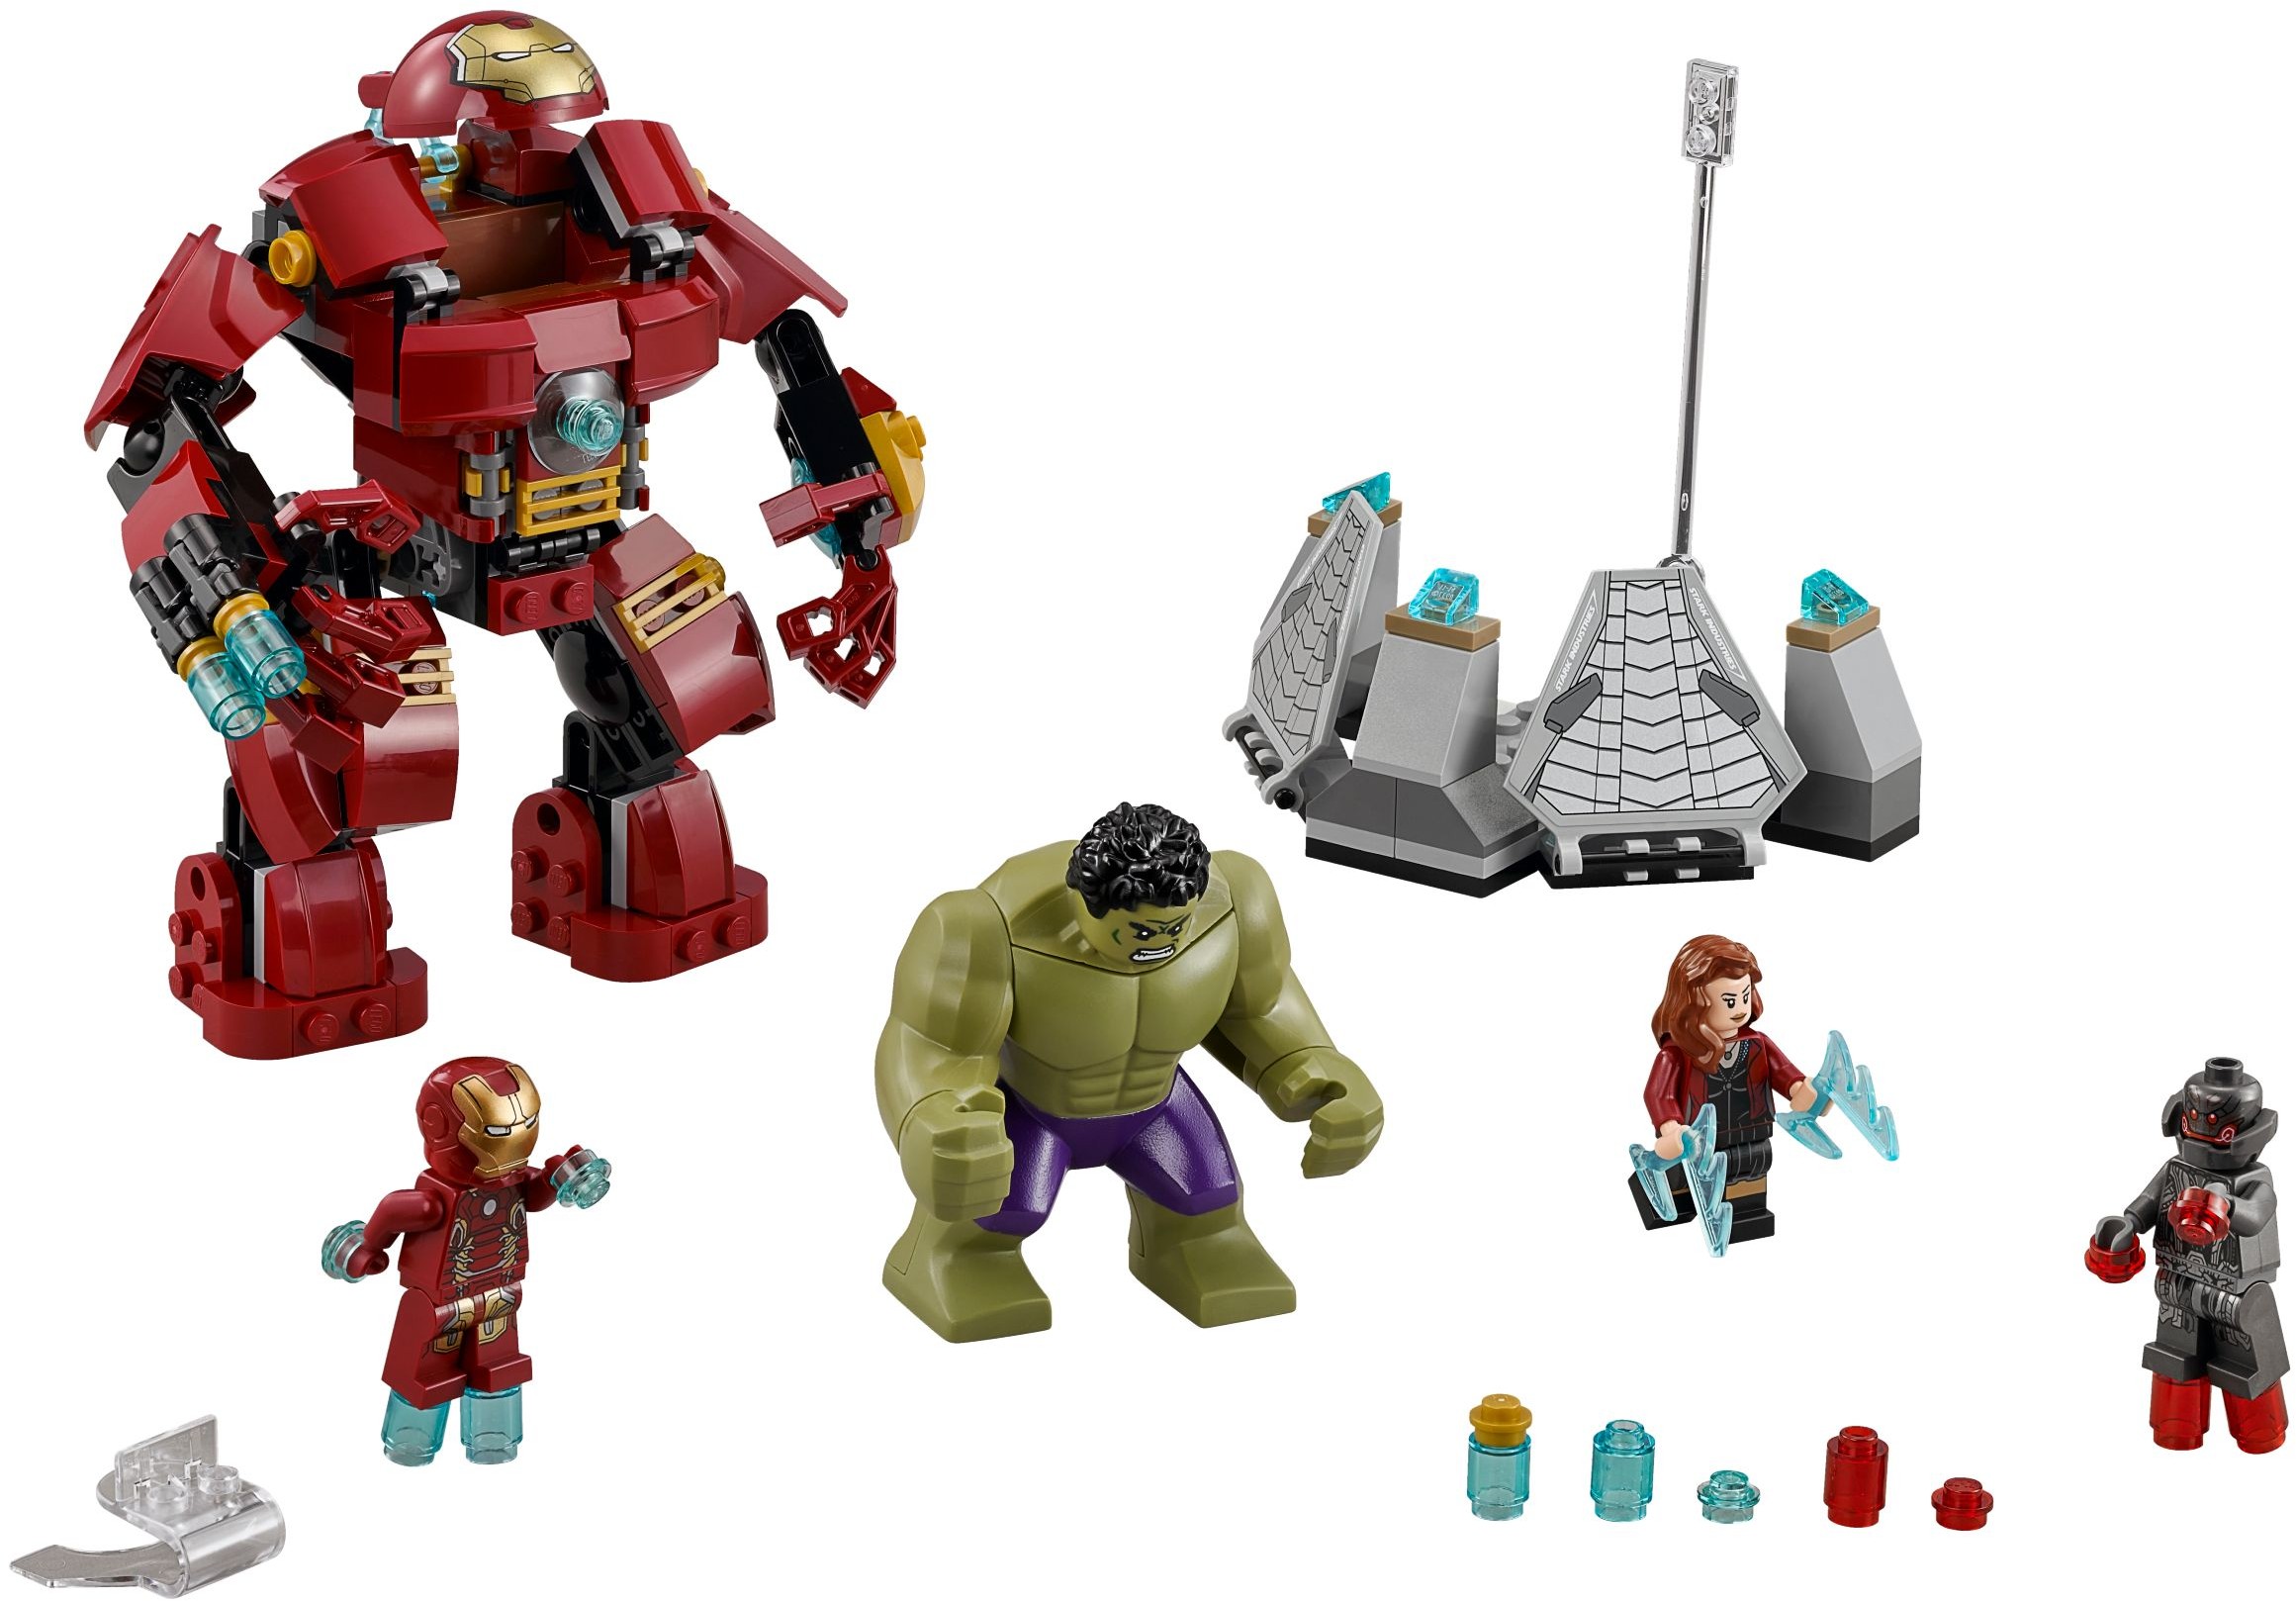 regulere Uenighed petulance LEGO Marvel Super Heroes 2015 | Brickset